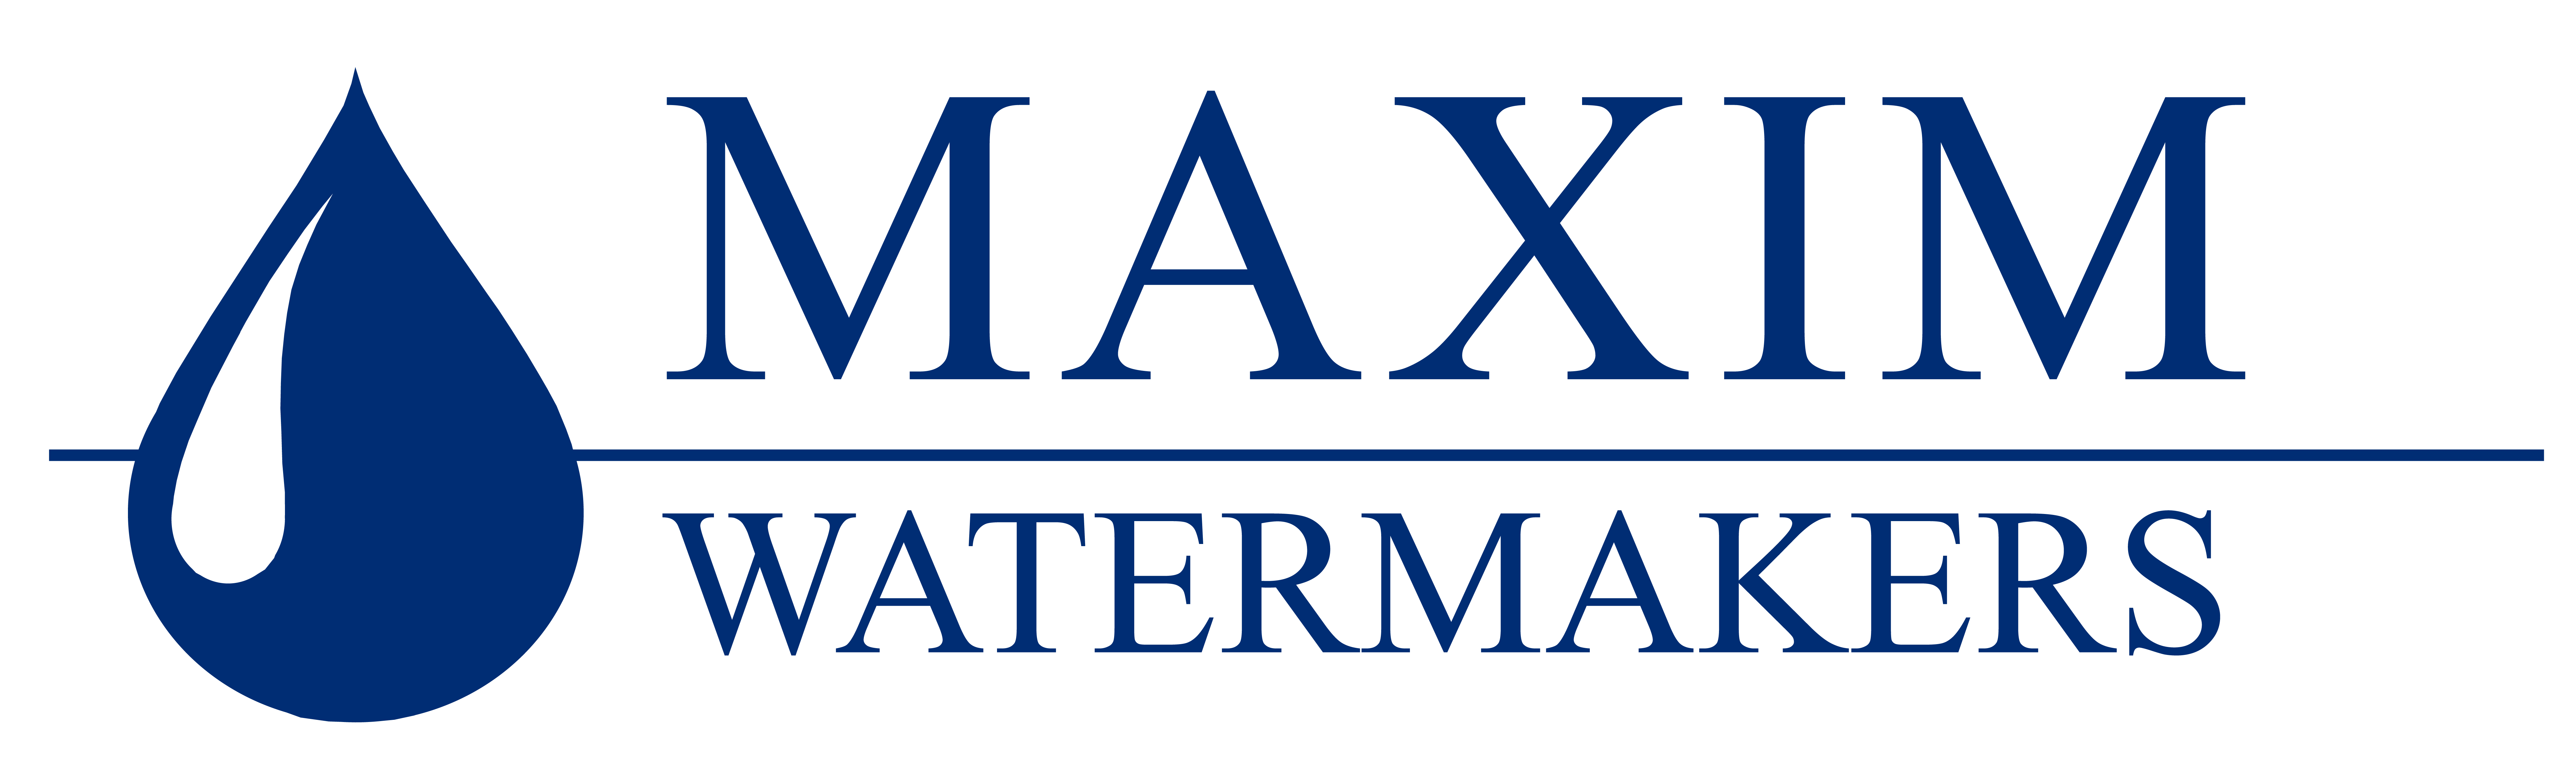 maxim-watermakers-logo-final